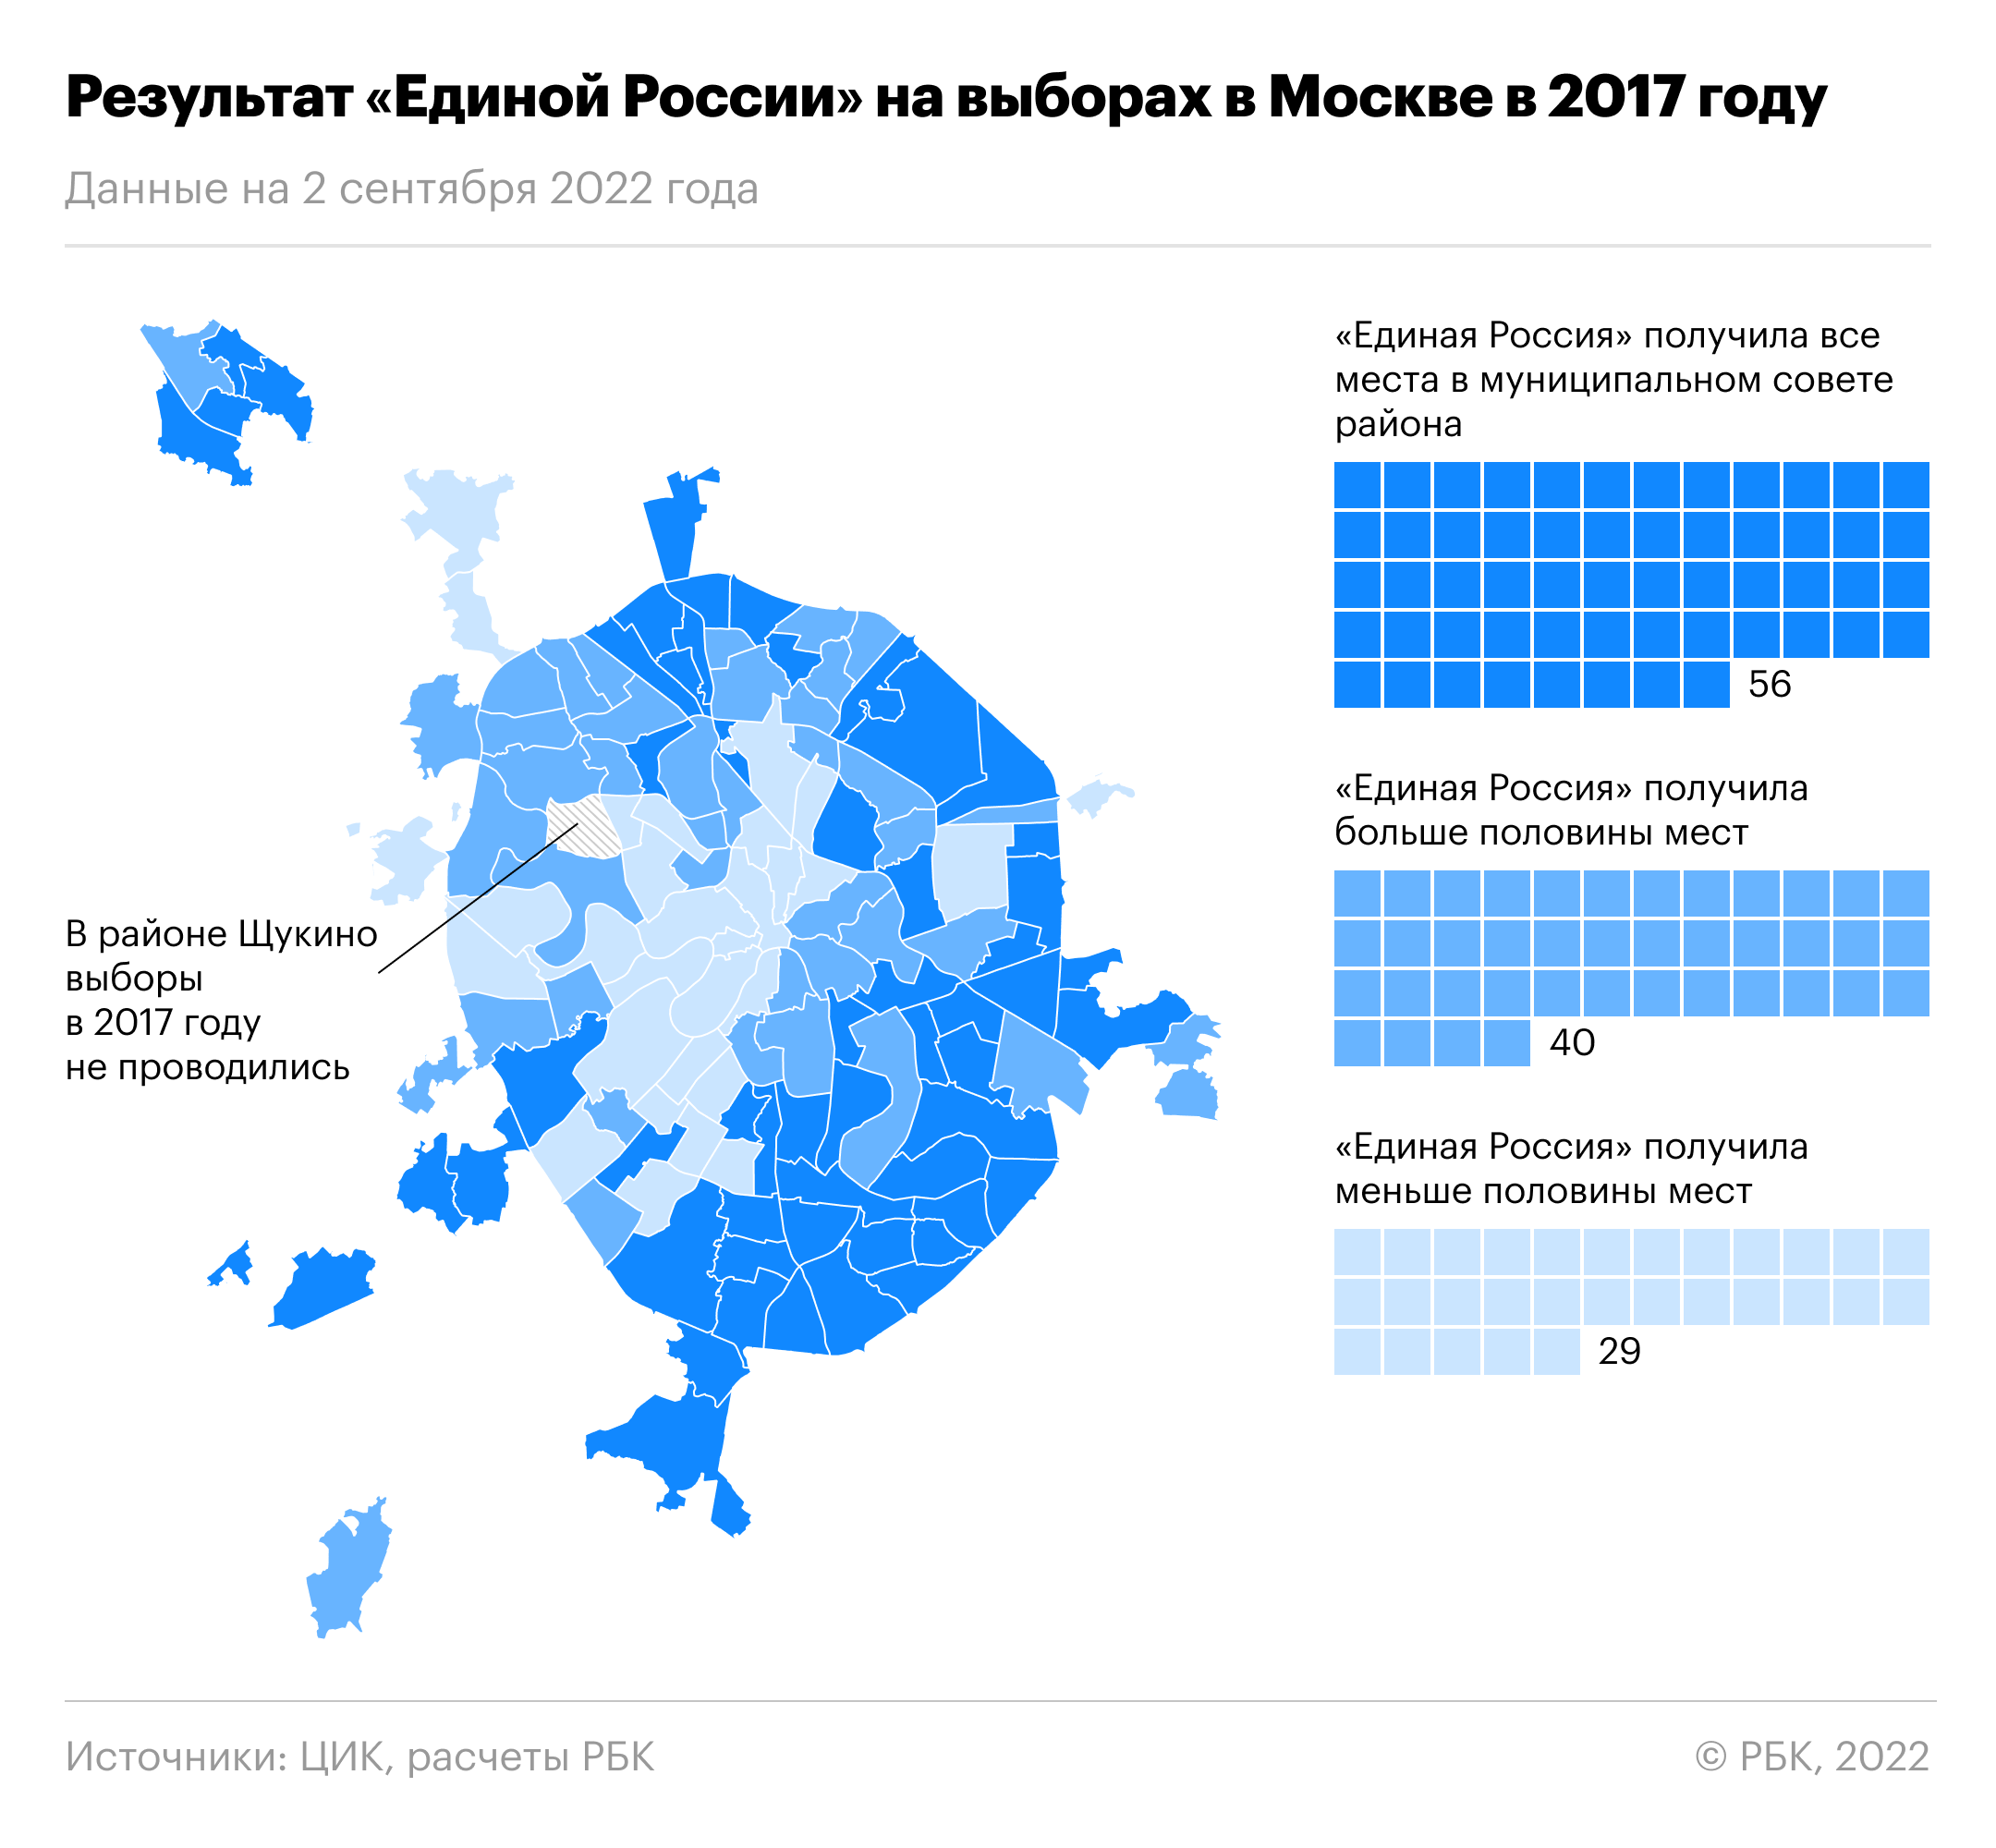 Как проголосовали в москве результаты